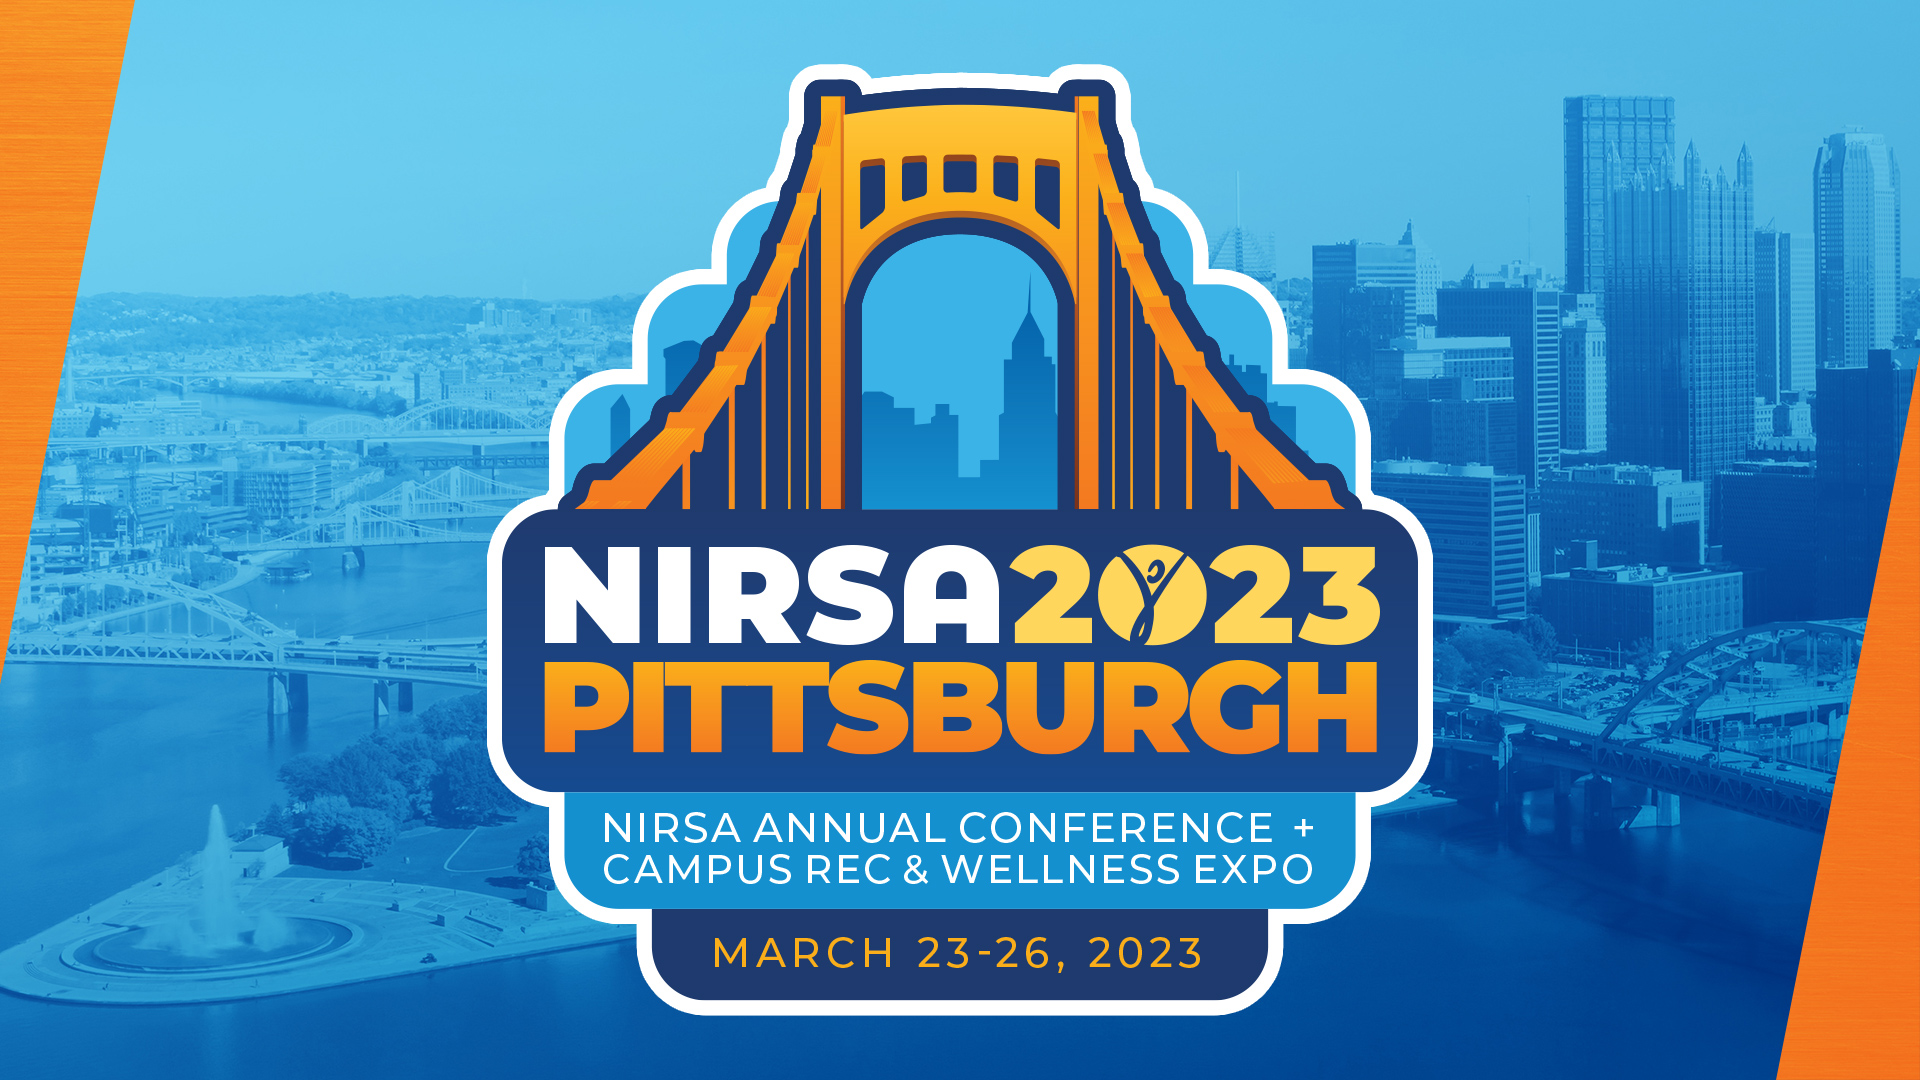 NIRSA 2023 Pittsburgh